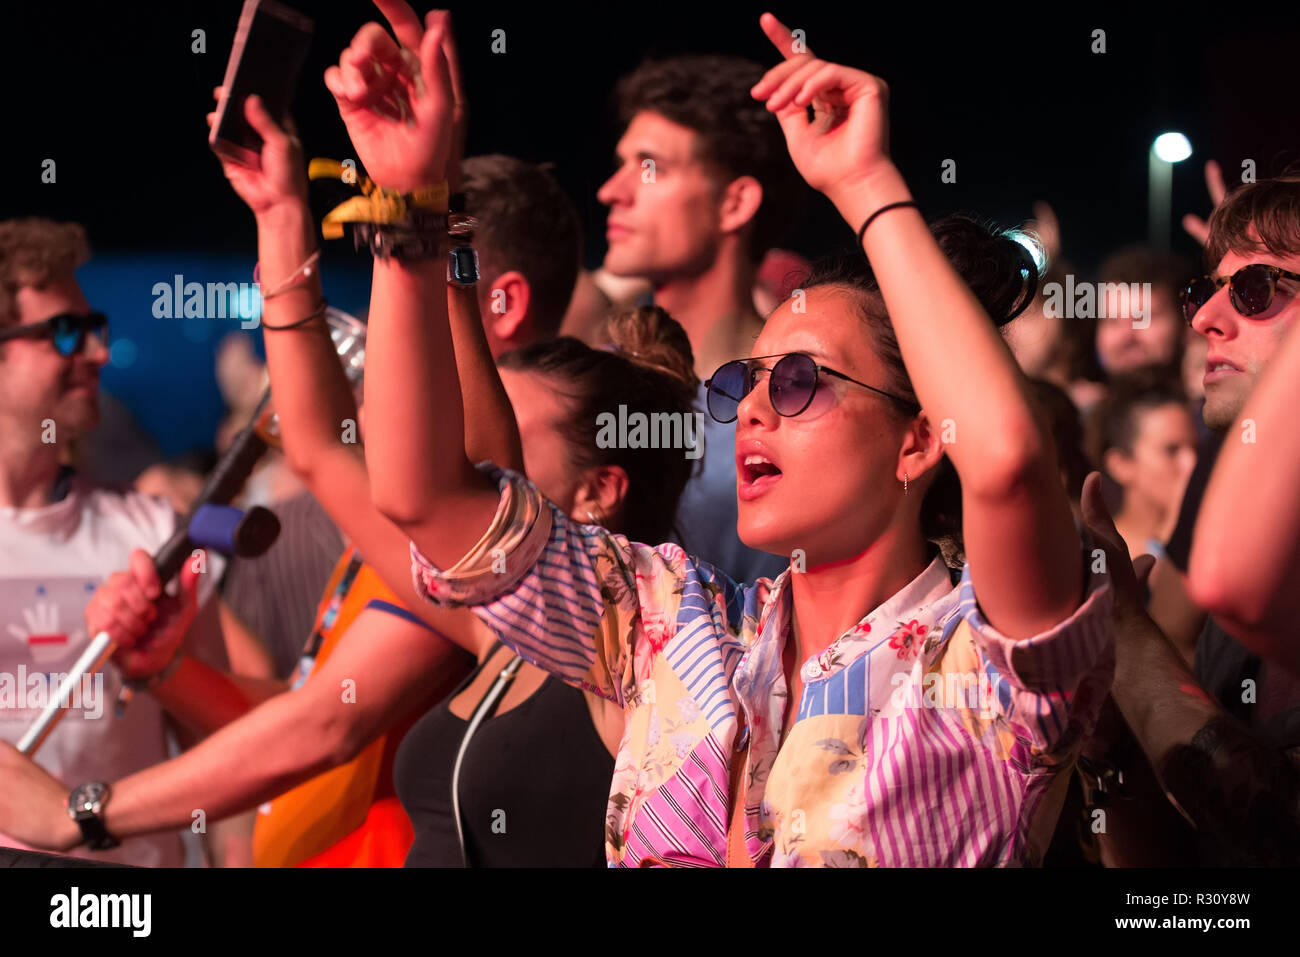 BENICASSIM, ESPAGNE - 21 JUL : la foule lors d'un concert au Festival de Musique le 21 juillet 2018 à Benicassim, Espagne. Banque D'Images